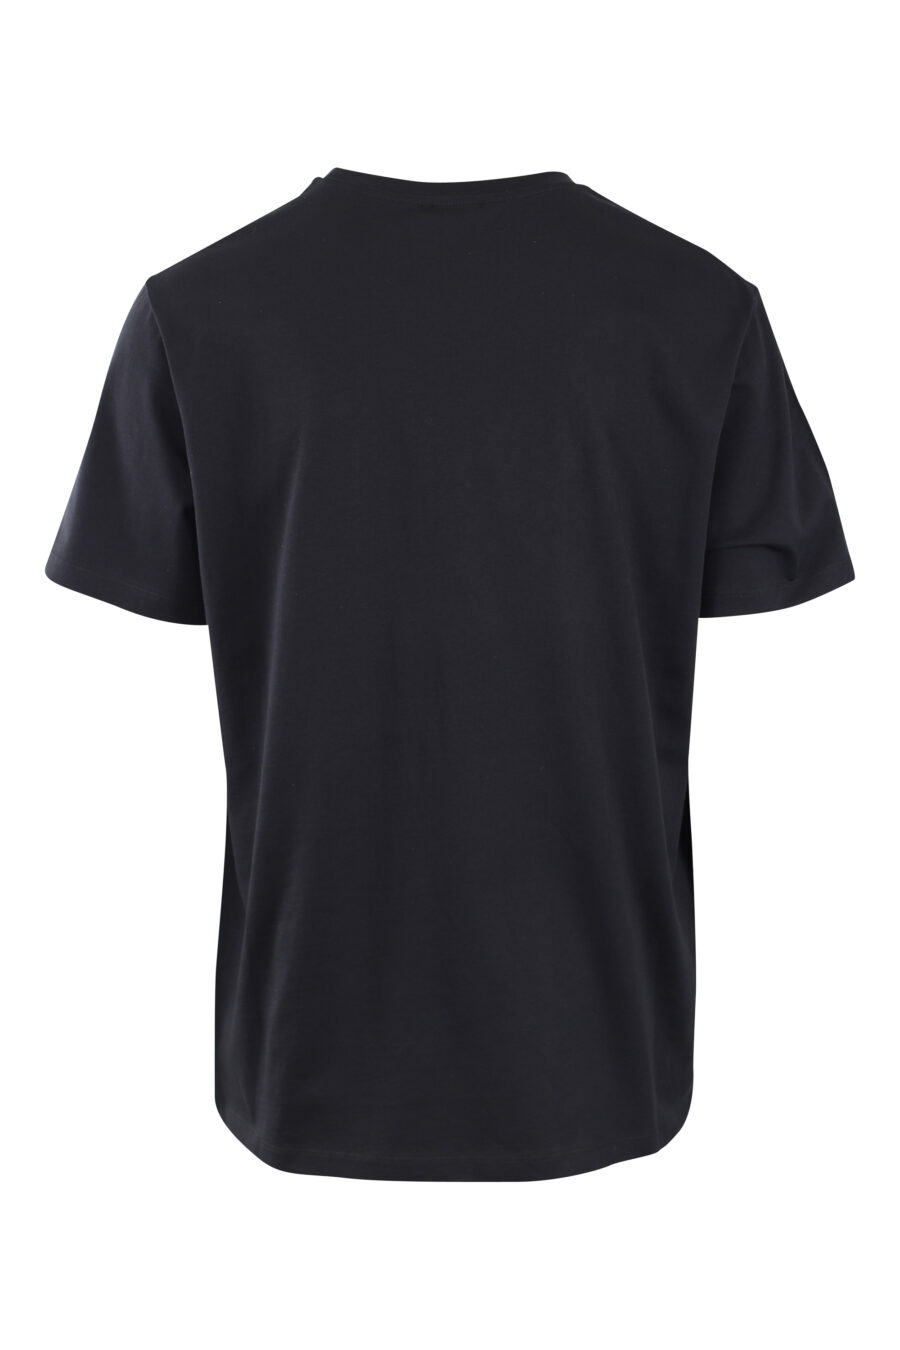 T-shirt preta com maxilogo de veludo preto com prata - IMG 2581